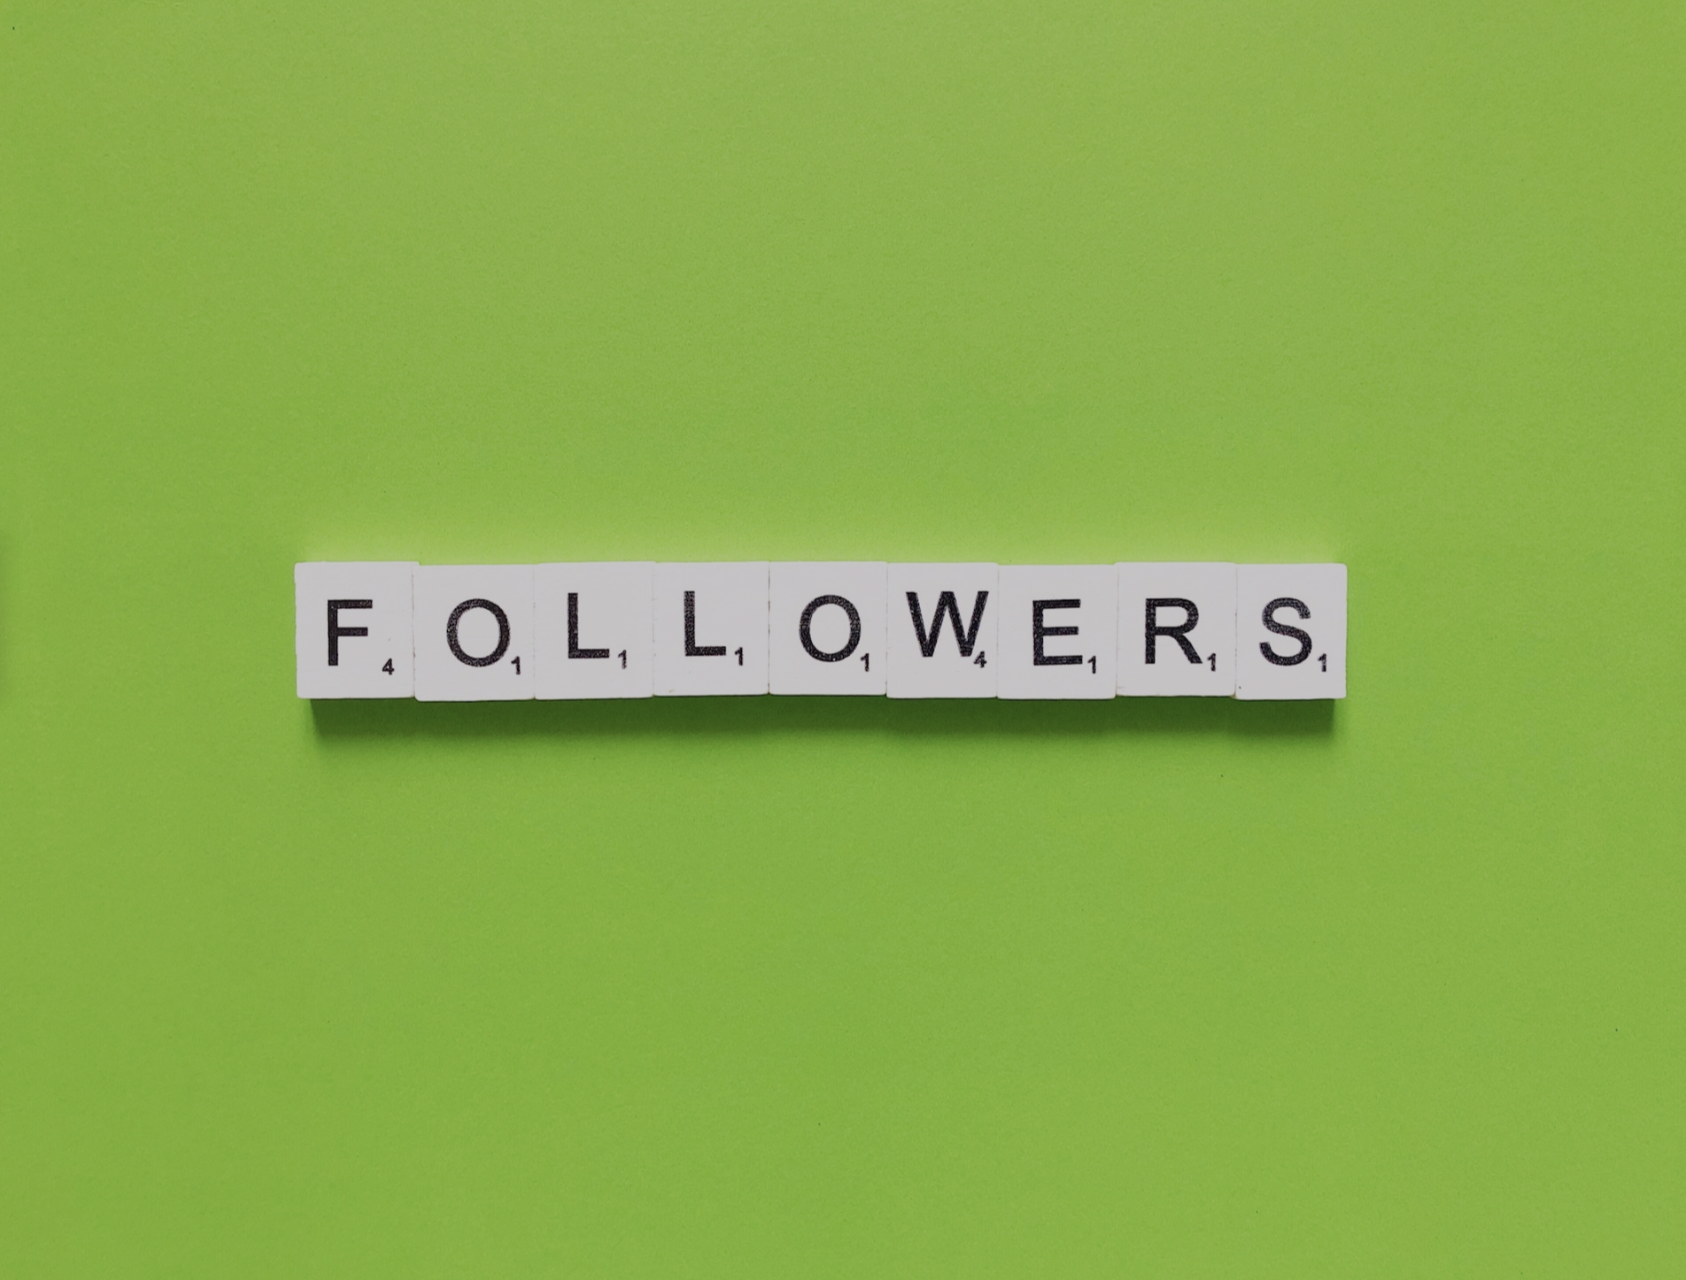 followers geschrieben auf grünem Hintergrund